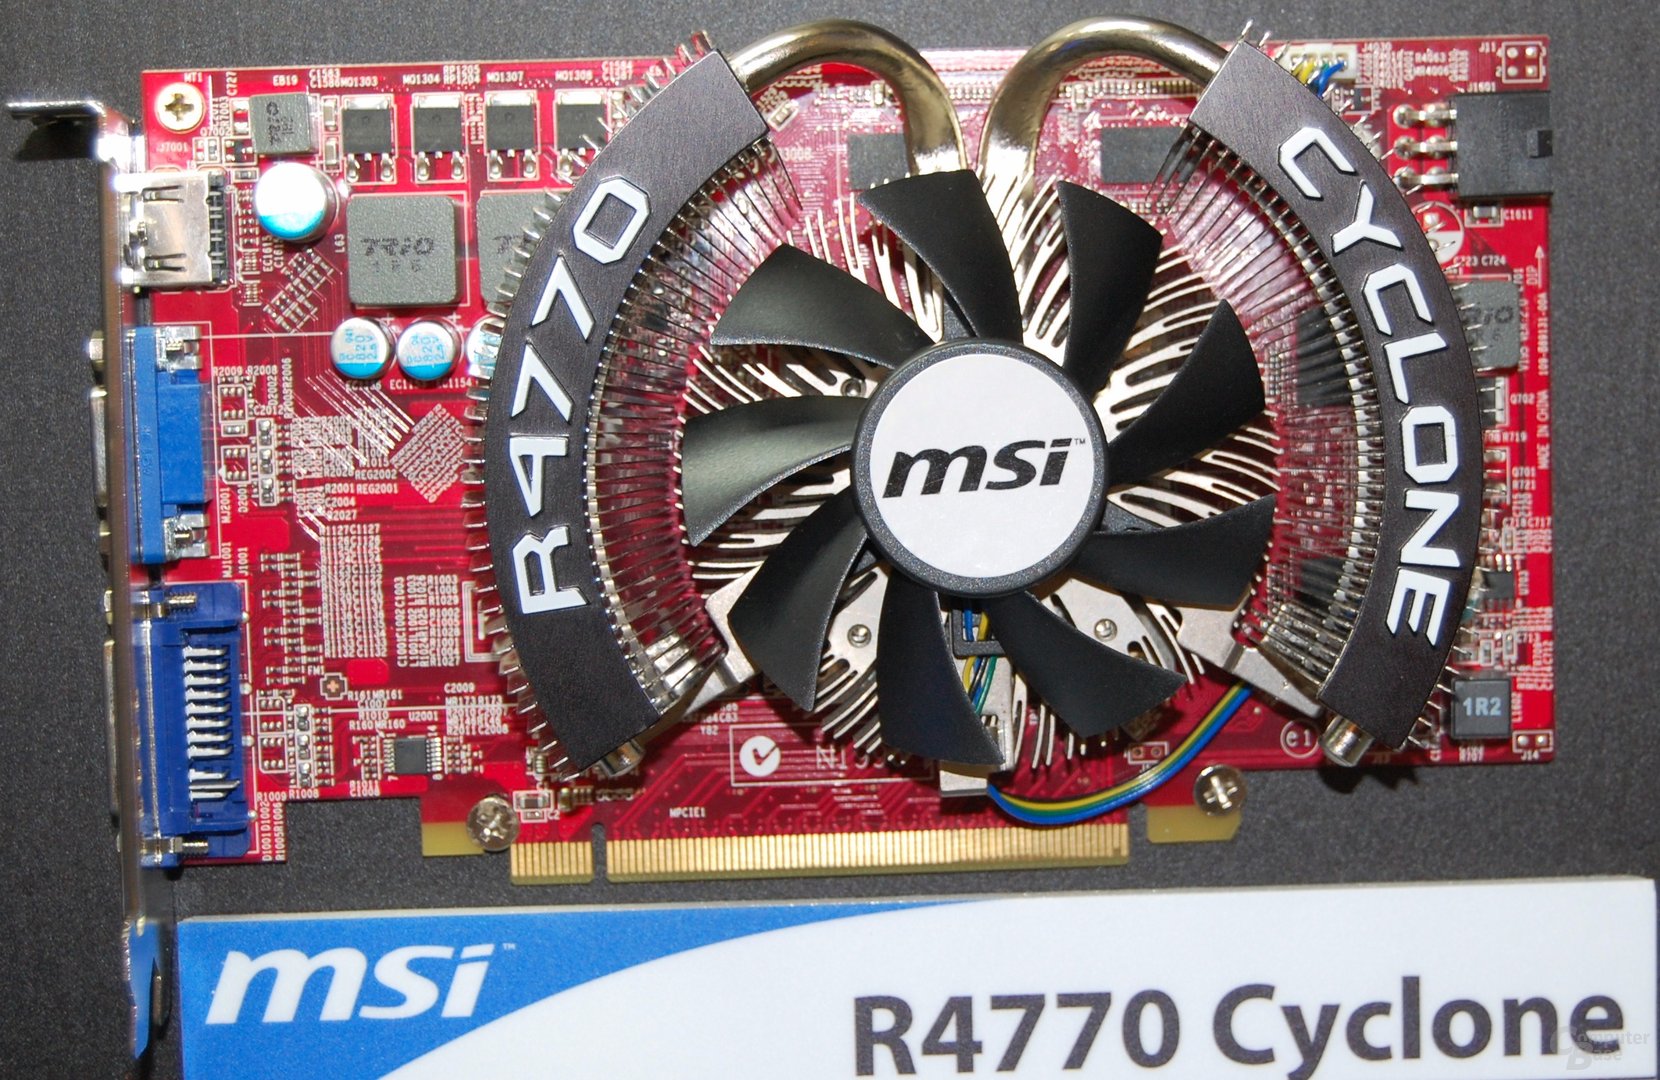 MSI Radeon HD 4770 Cyclone